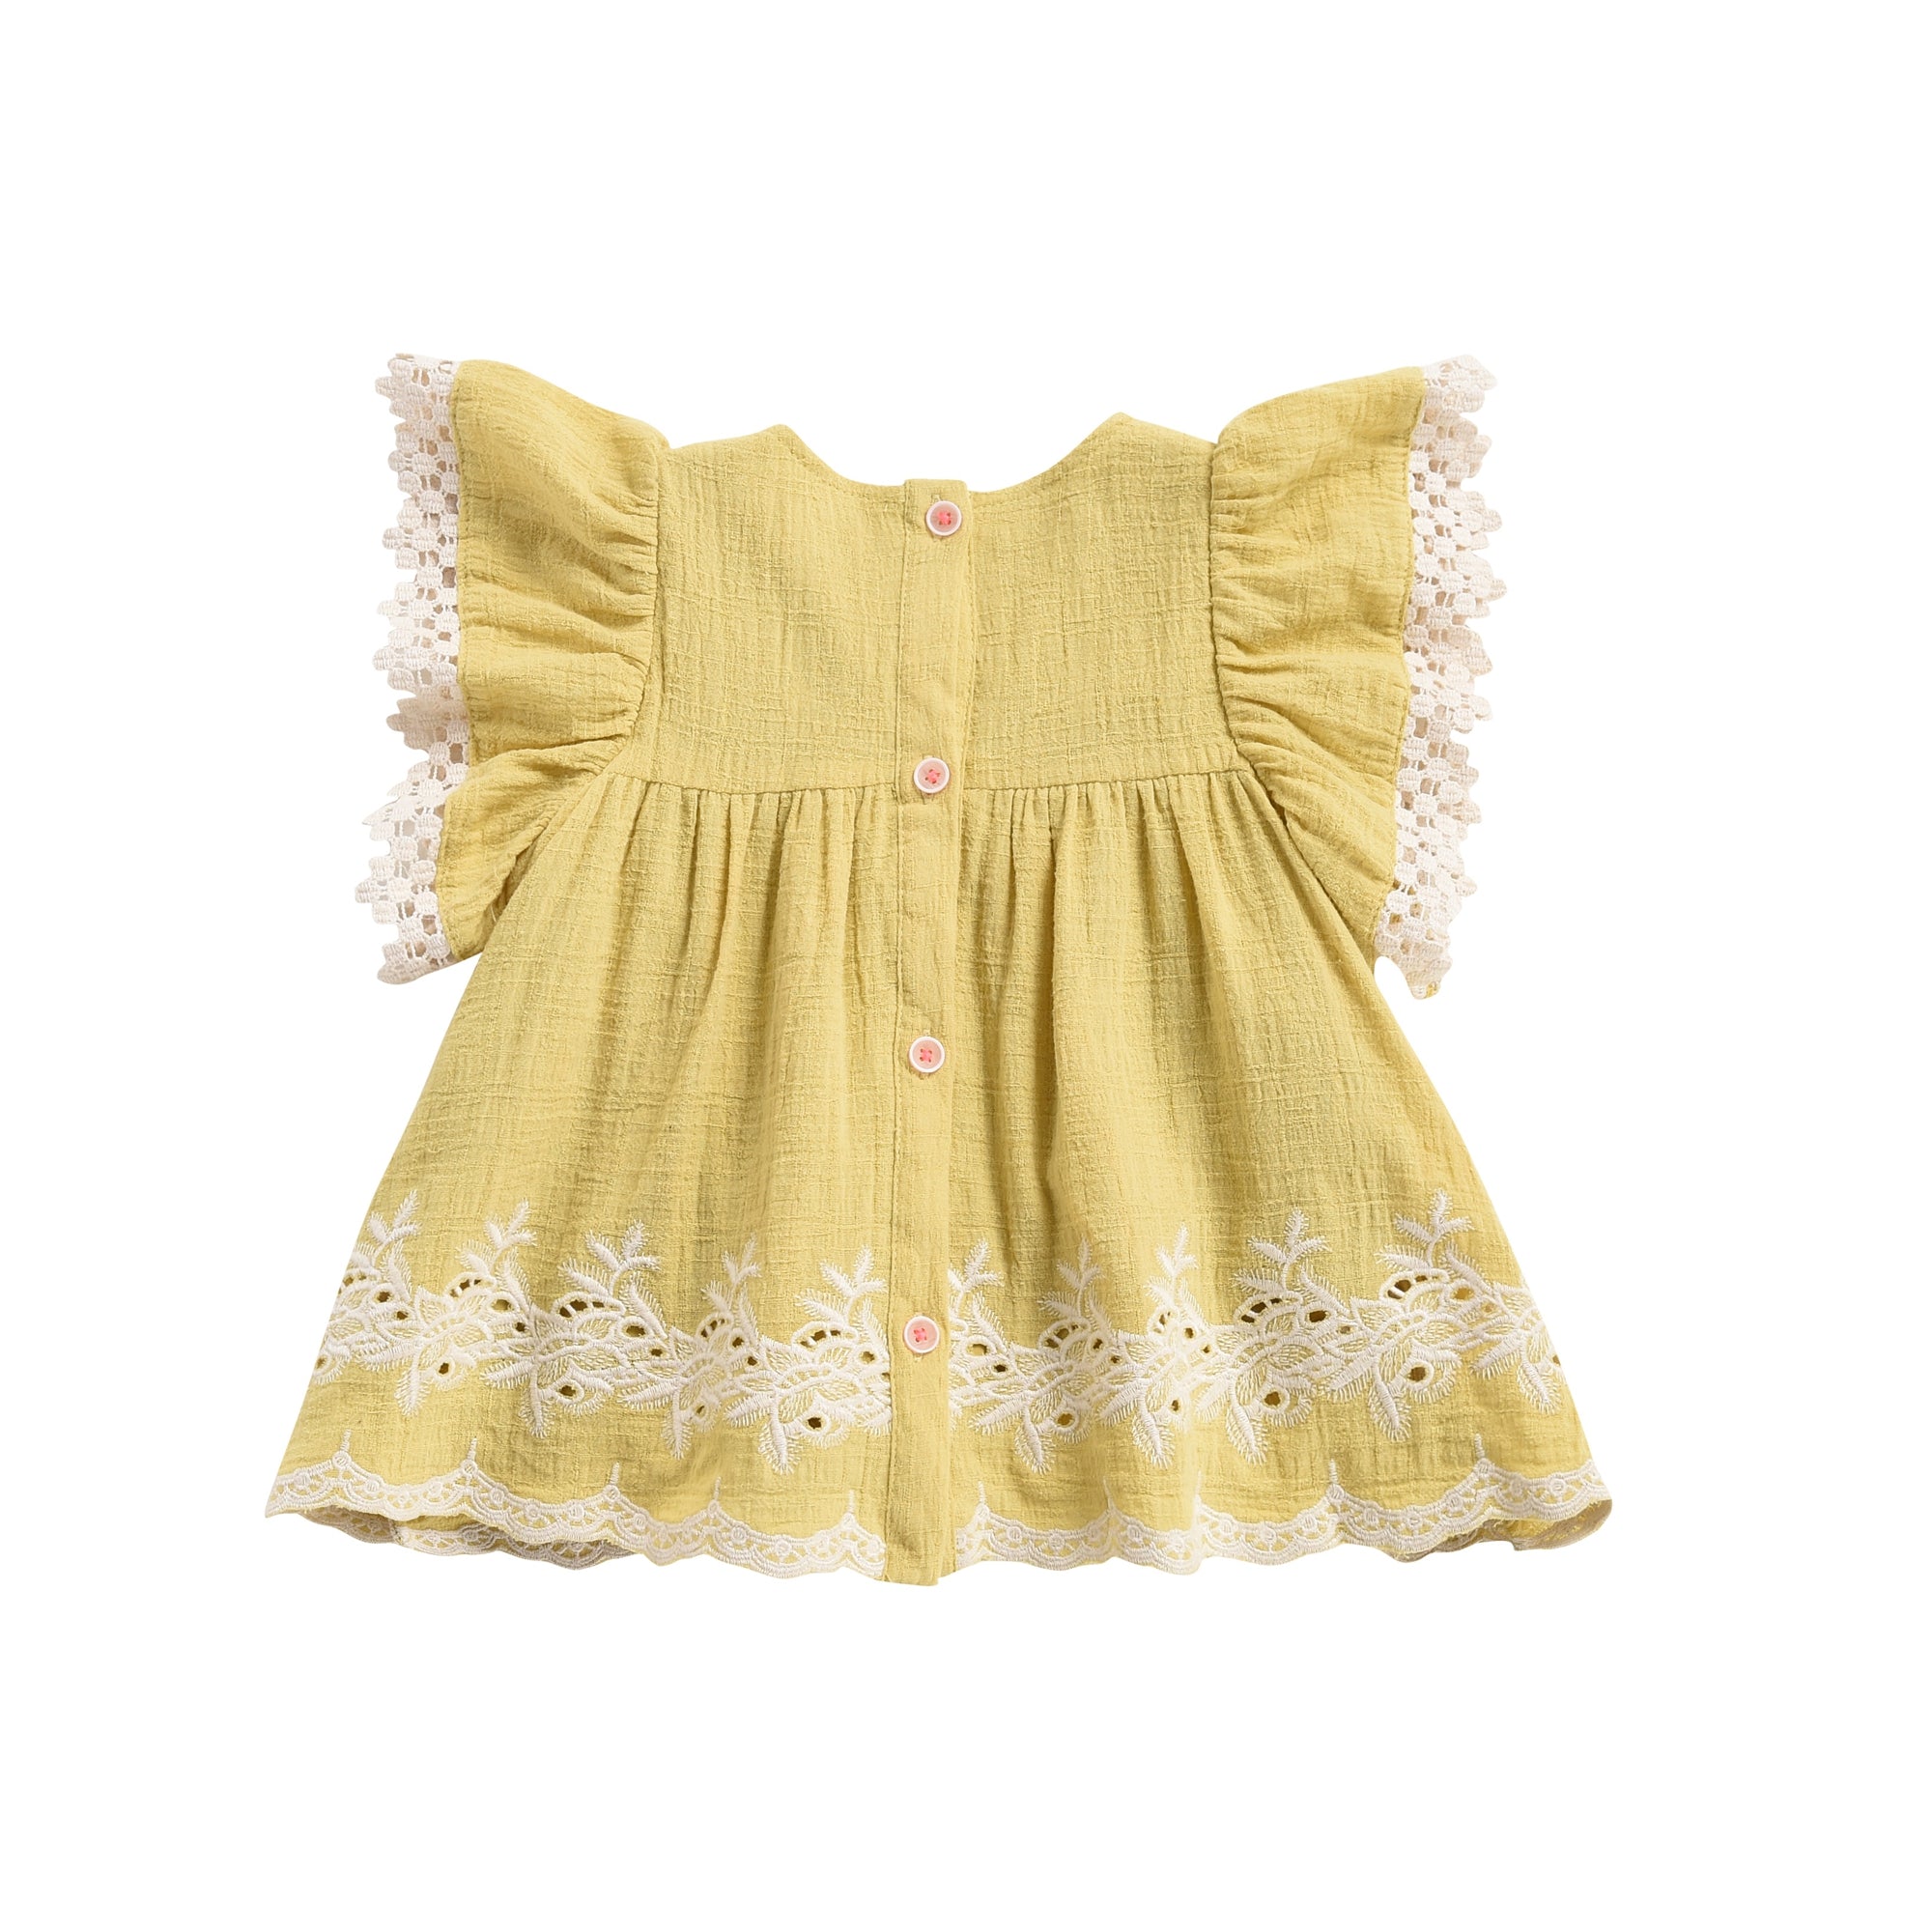 Girls Soft Yellow Cotton Dress